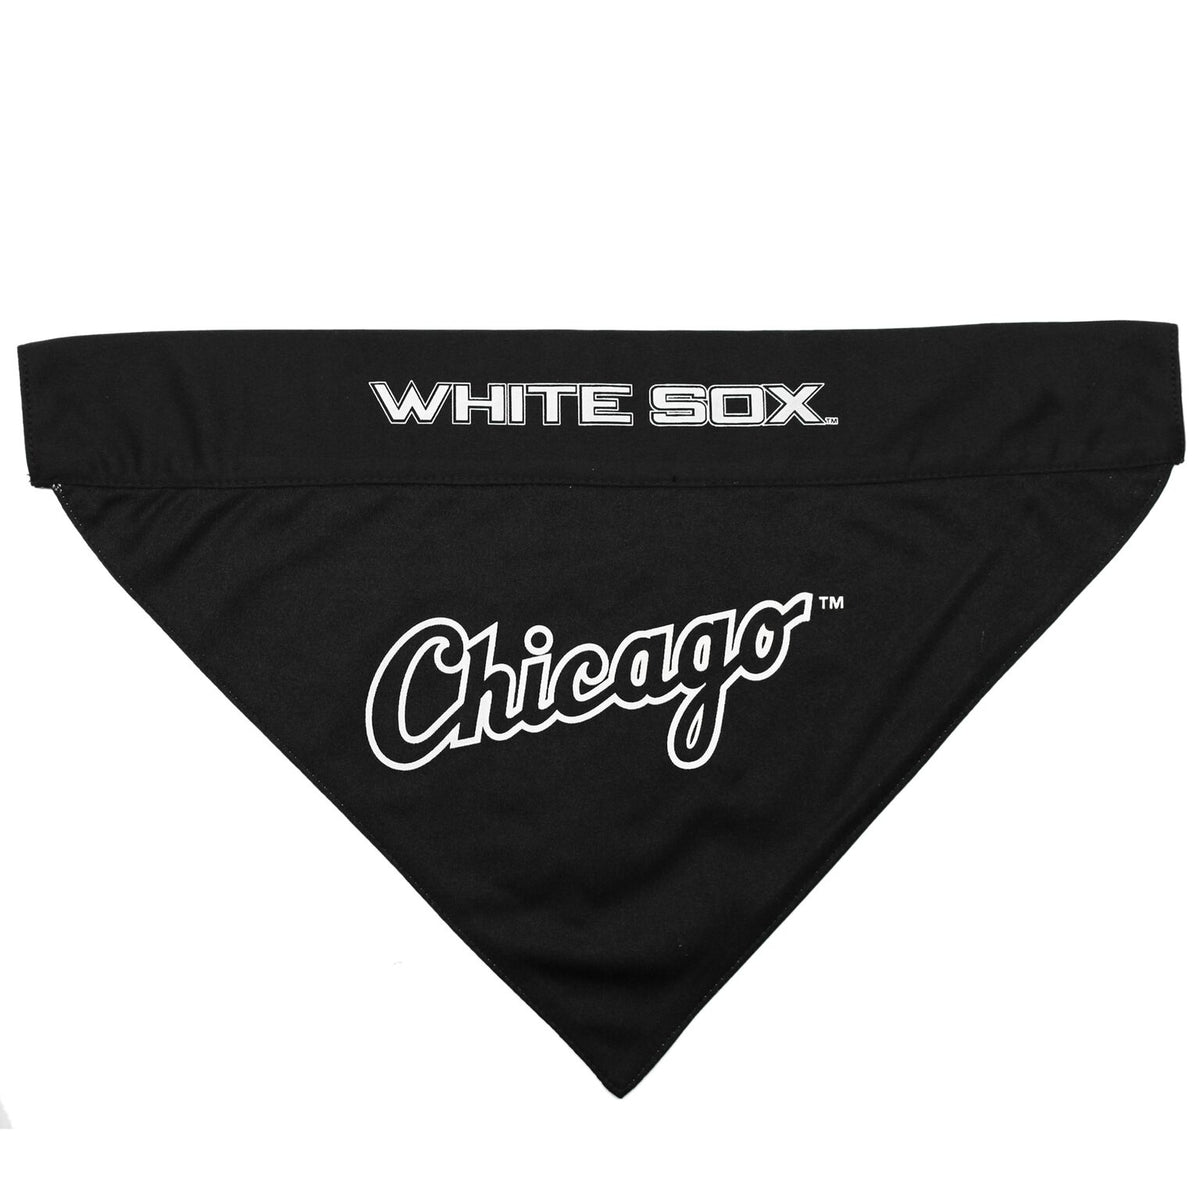 Chicago White Sox Reversible Slide-On Bandana